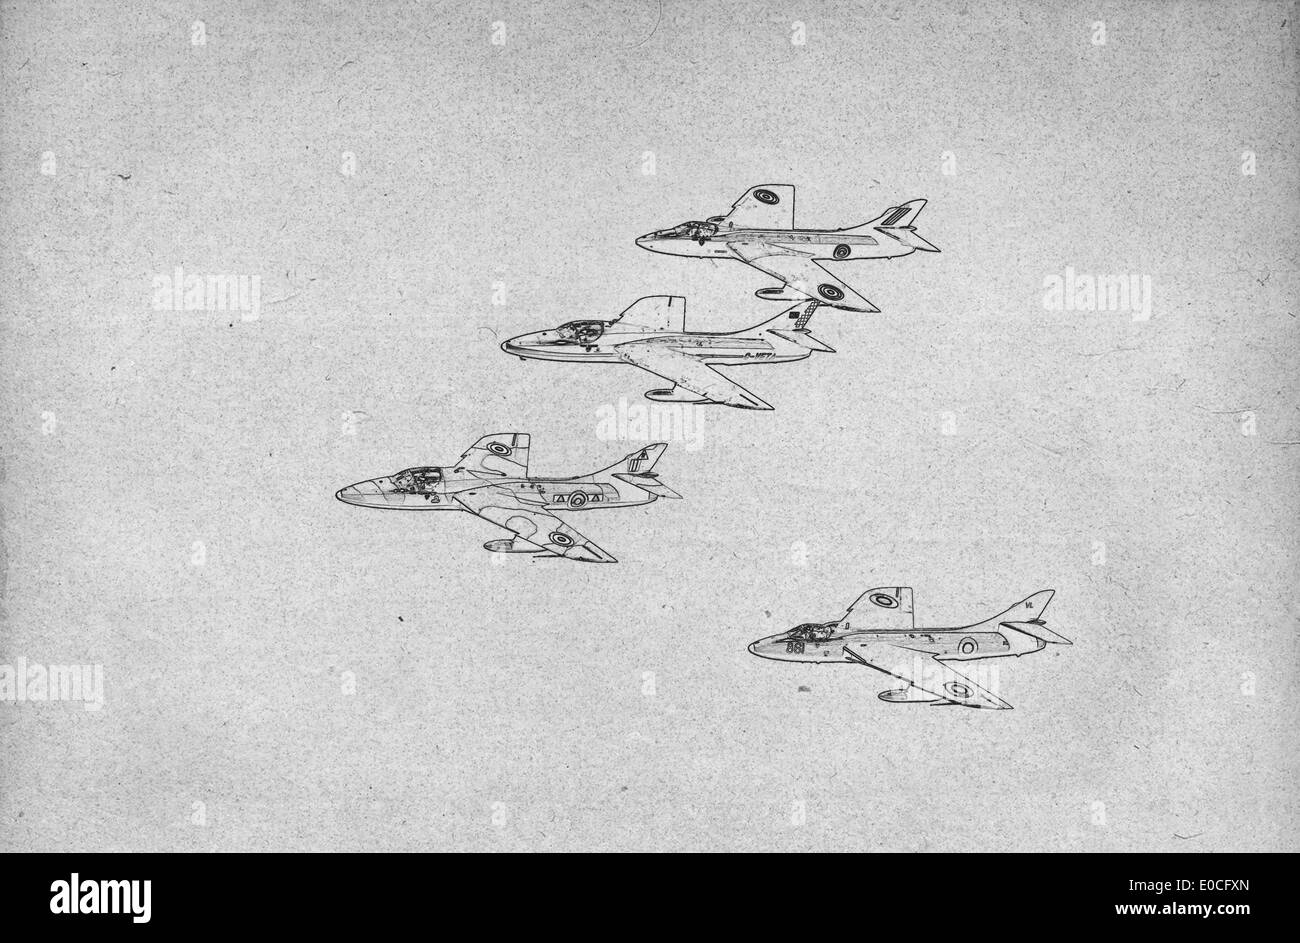 Grungy disegno tecnico o il progetto immagine su sfondo nero jet da combattimento Foto Stock